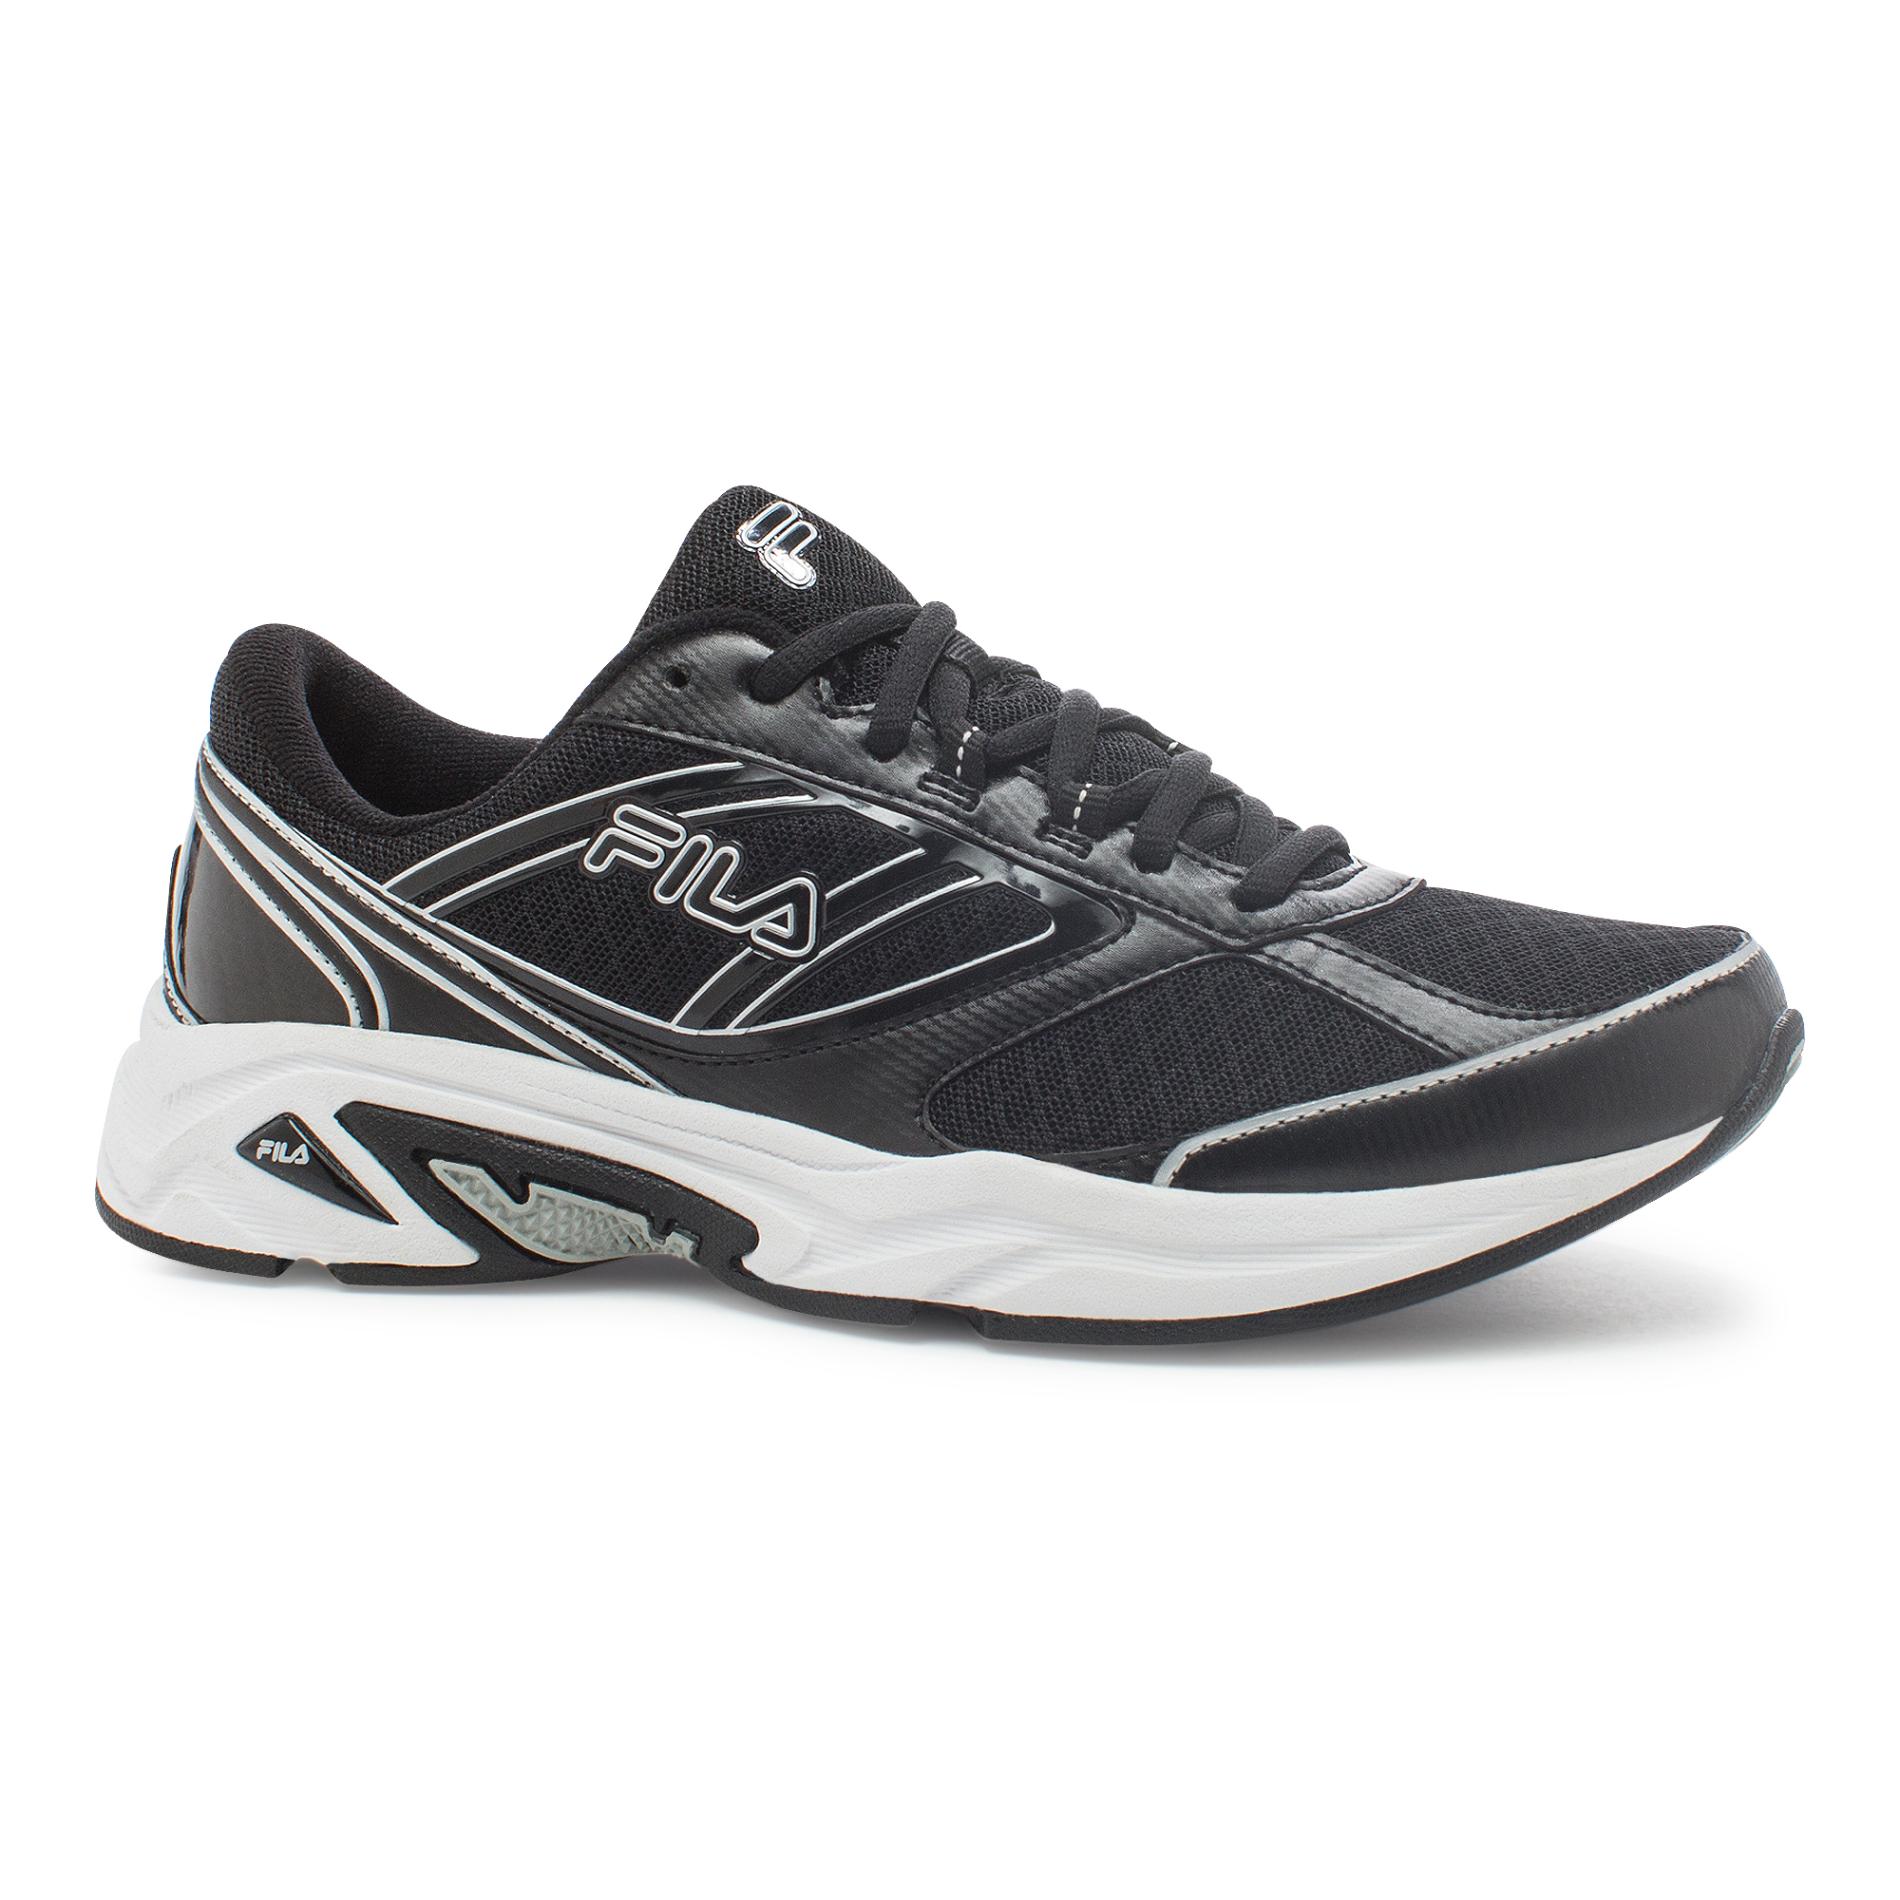 Fila Women's Physique Athletic Shoe - Black/Gray